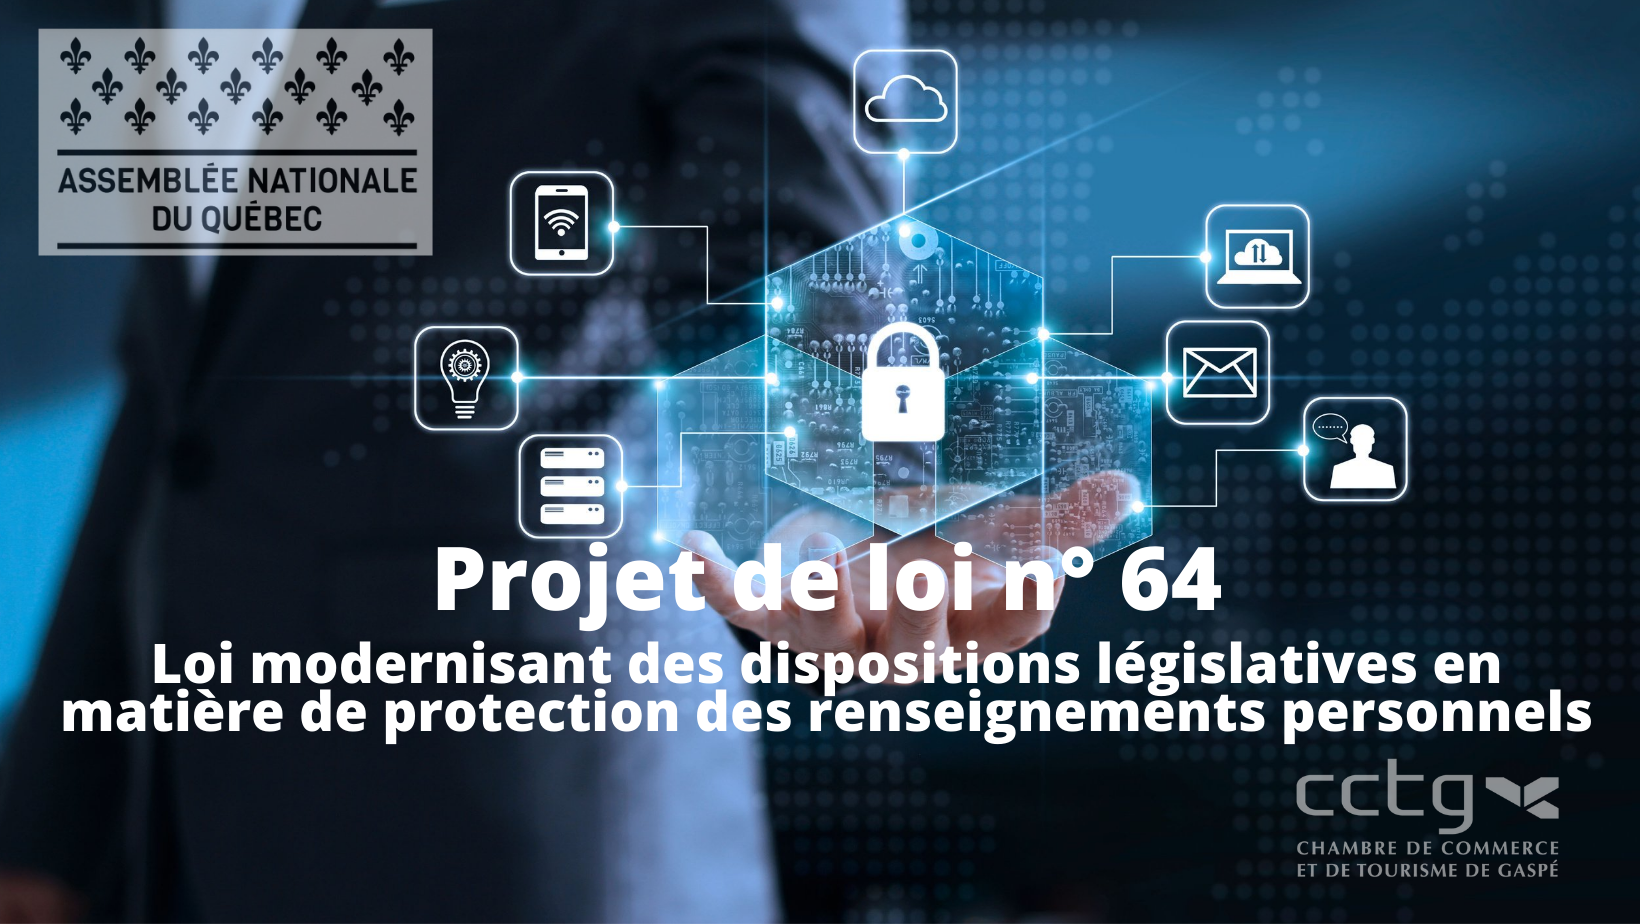 Projet de loi n° 64 modernisant des dispositions législatives en matière de protection des renseignements personnels